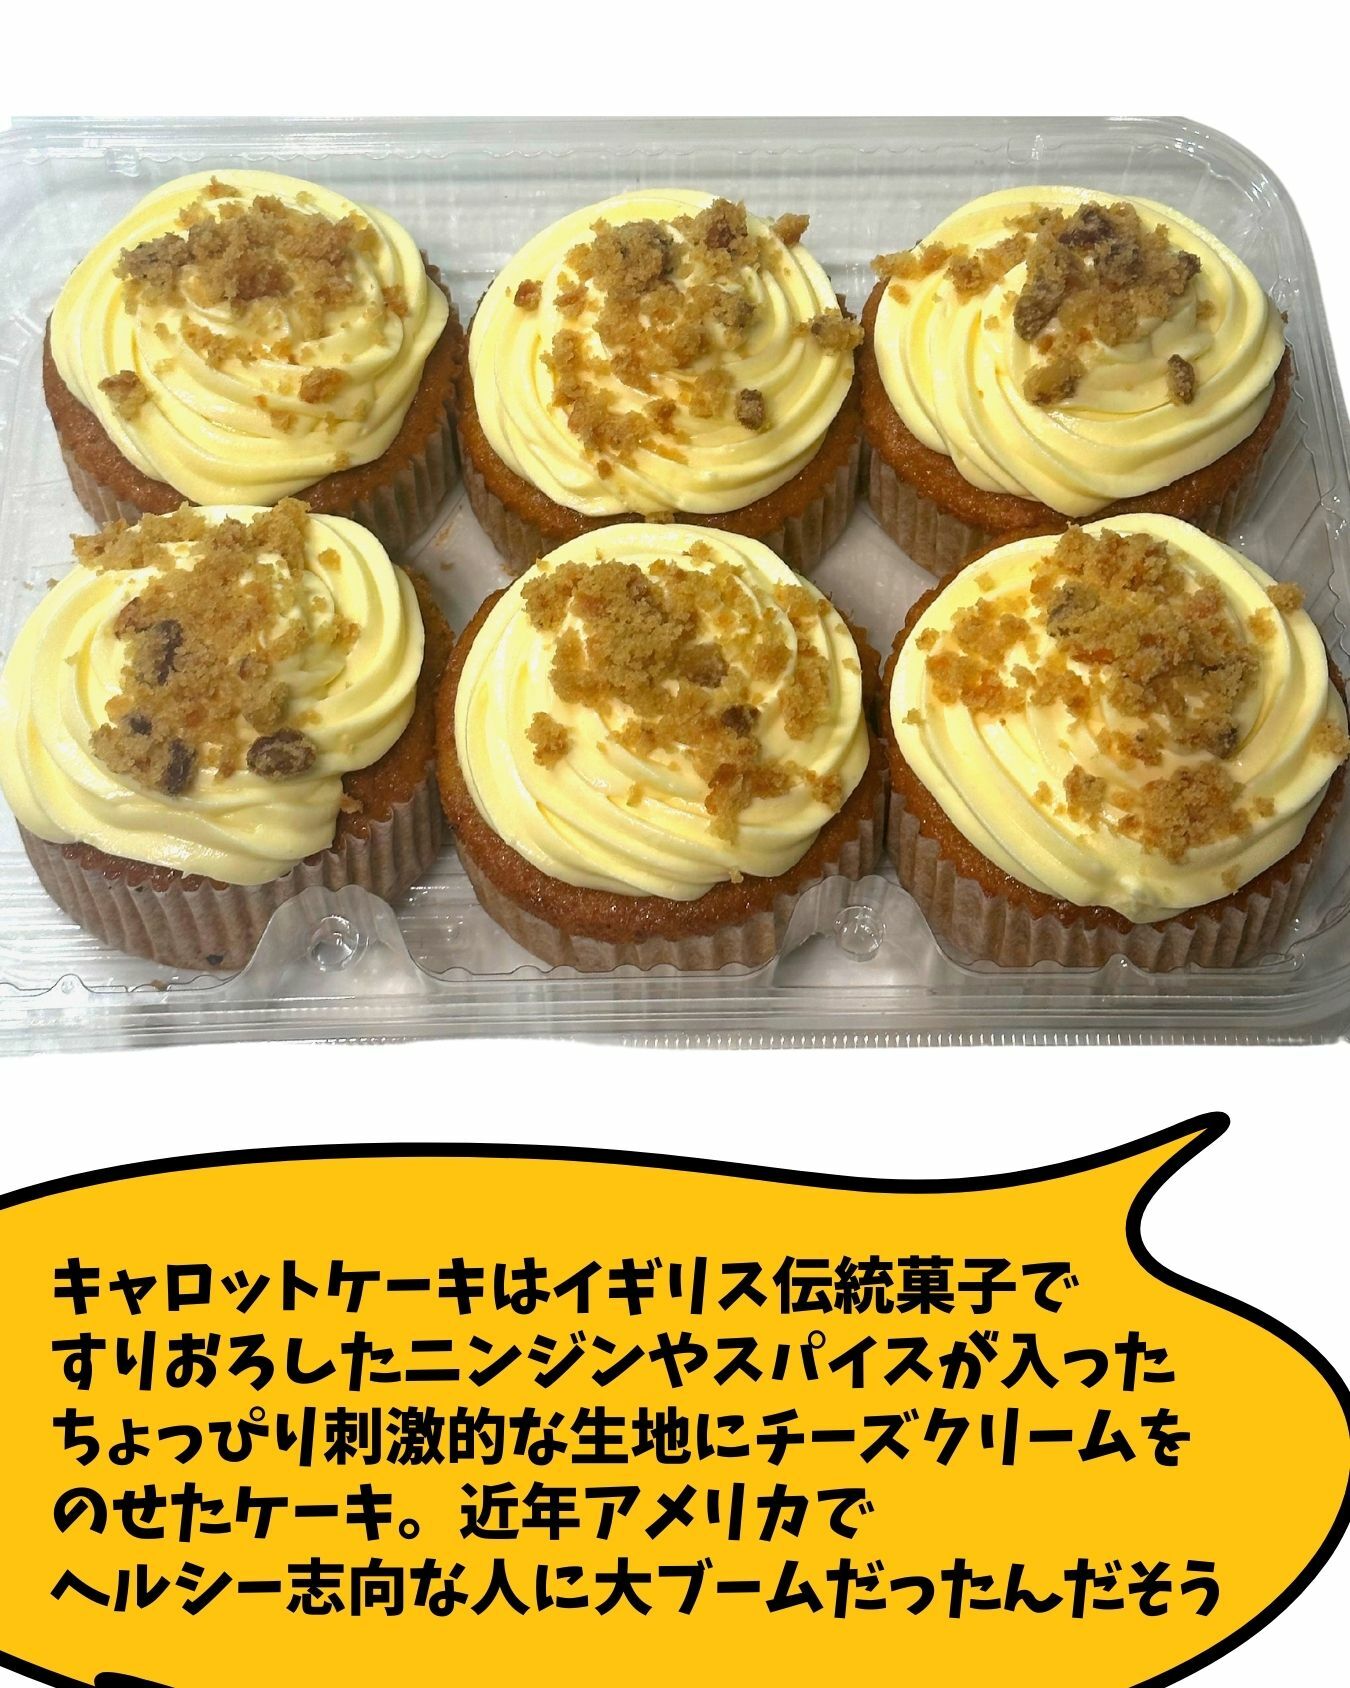 【コストコ】新商品キャロットカップケーキ